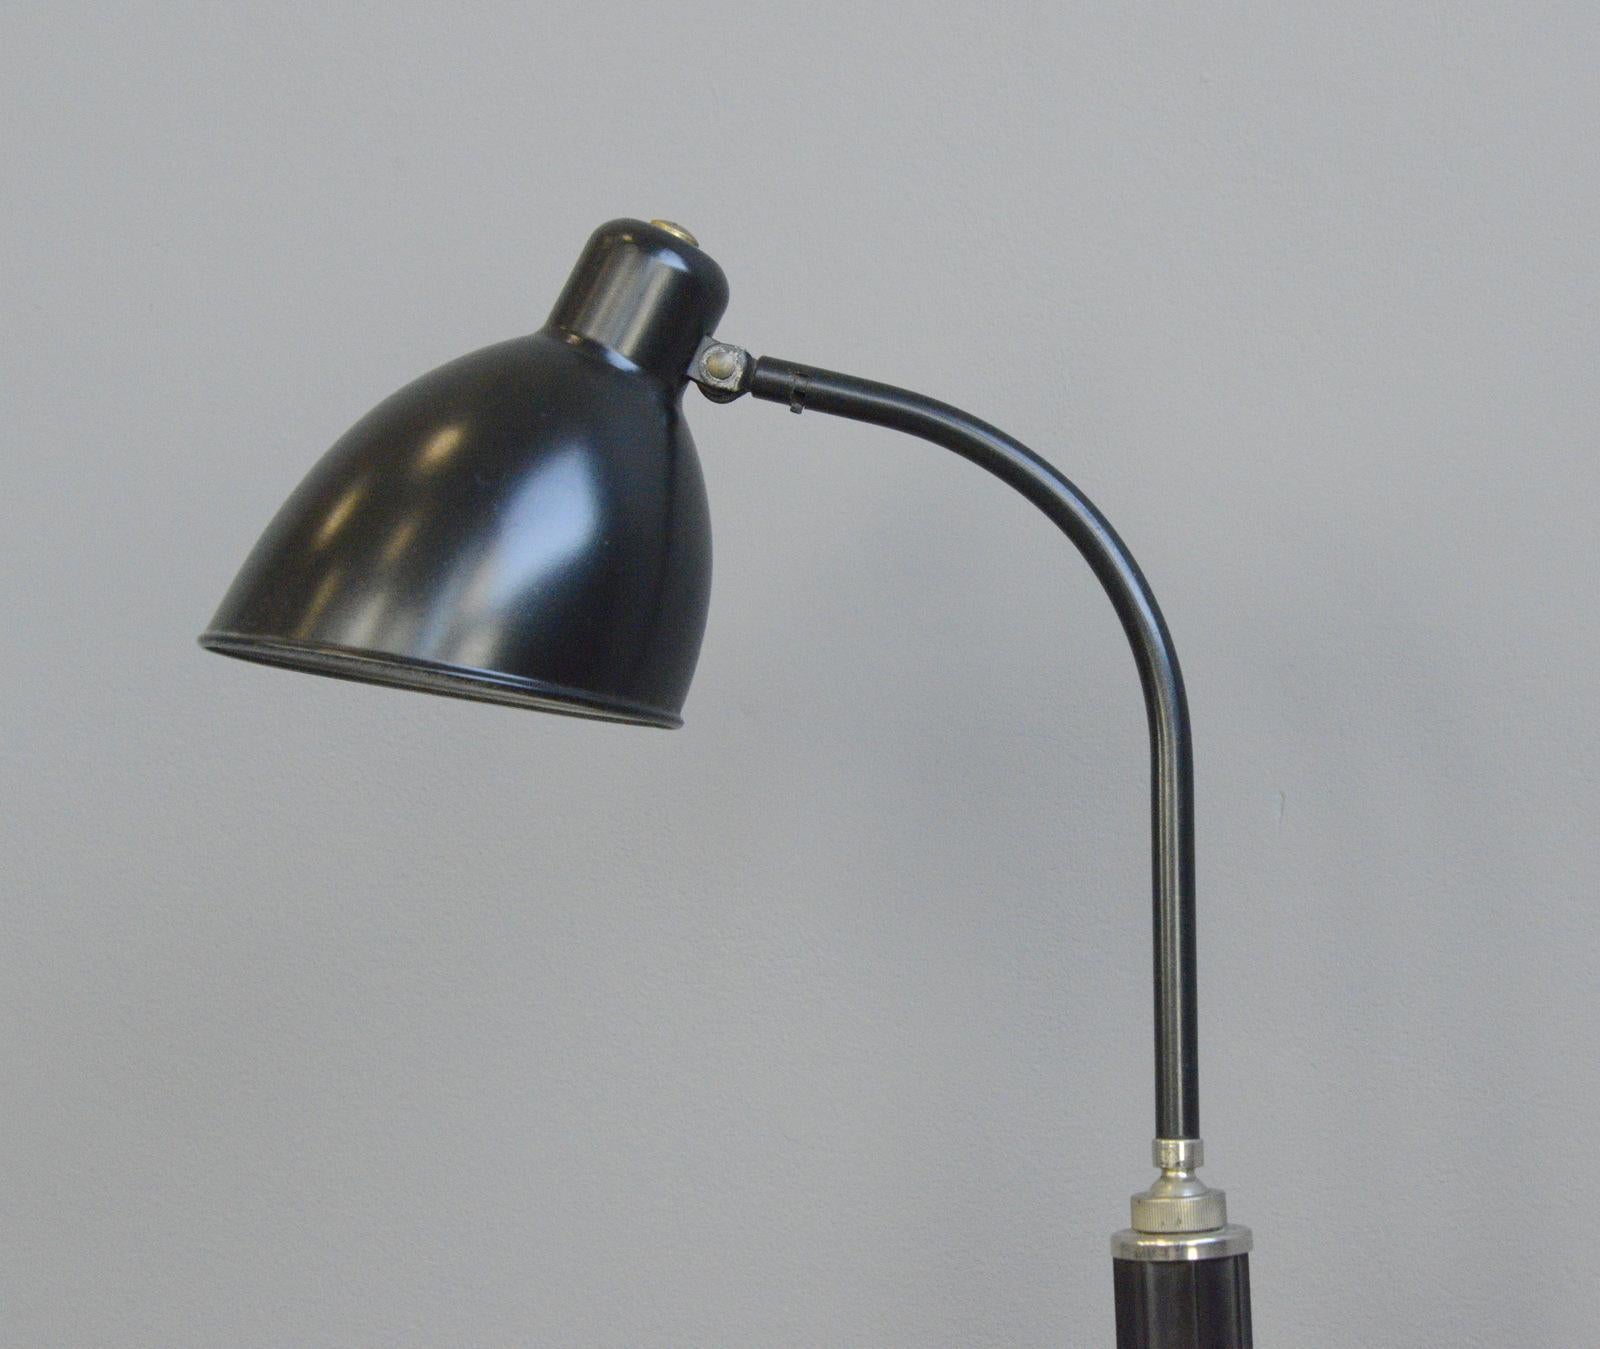 Bauhaus Favorit Model Desk Lamp by Molitor, circa 1930s